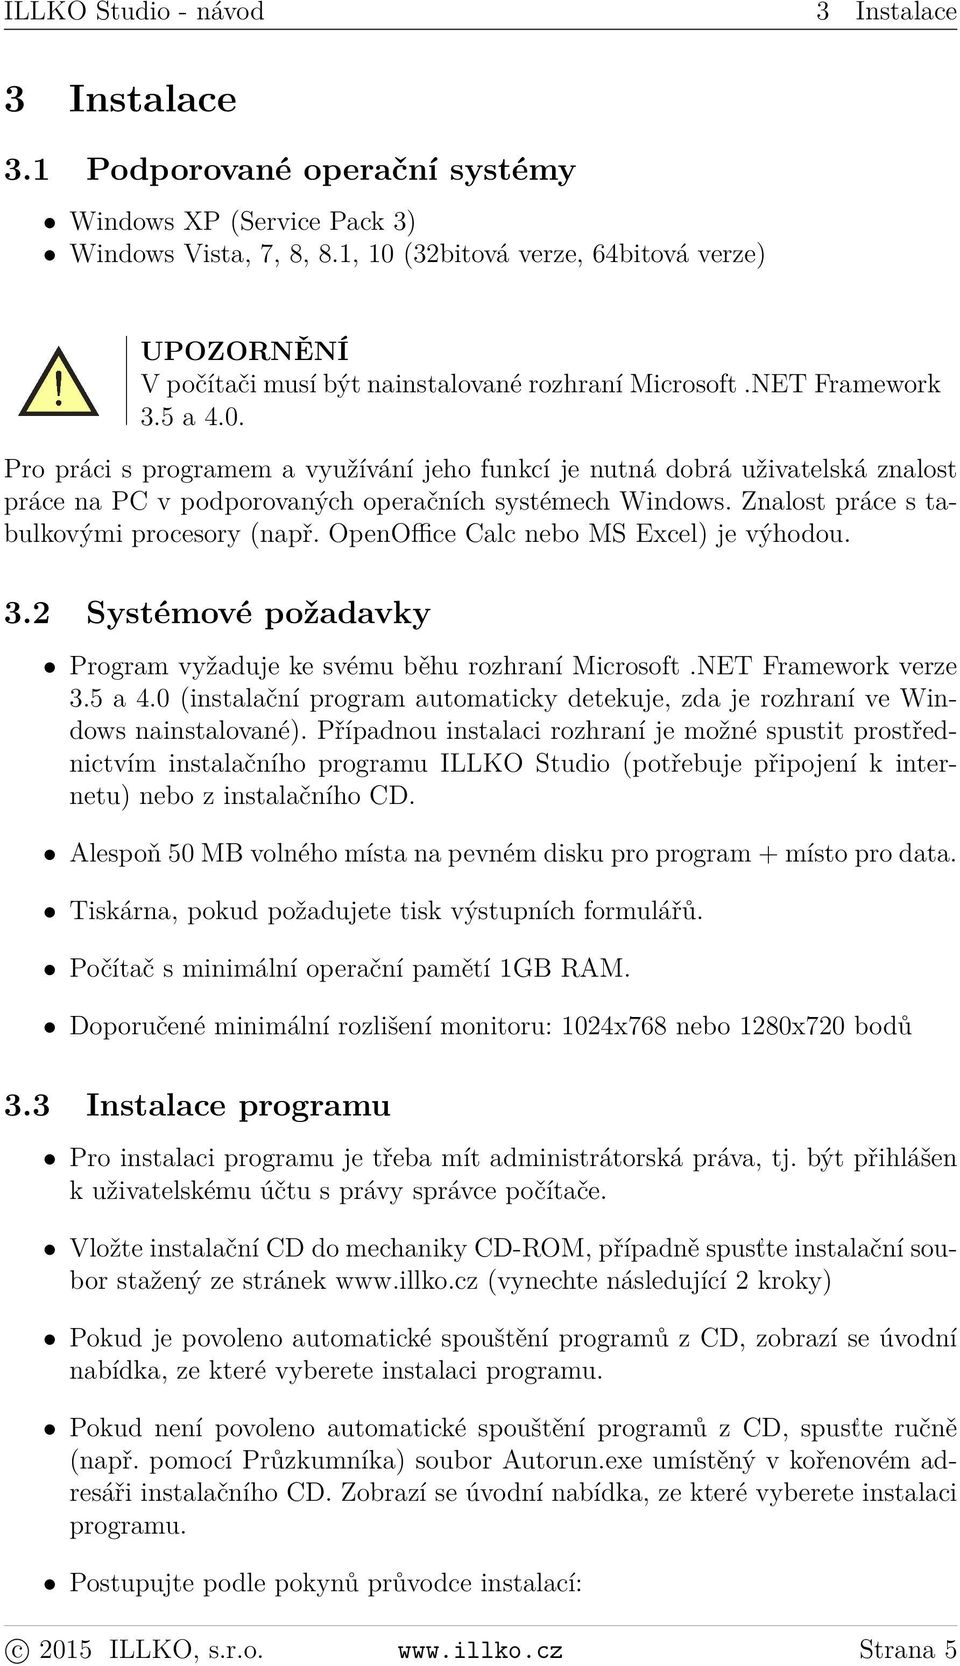 Znalost práce s tabulkovými procesory (např. OpenOffice Calc nebo MS Excel) je výhodou. 3.2 Systémové požadavky Program vyžaduje ke svému běhu rozhraní Microsoft.NET Framework verze 3.5 a 4.